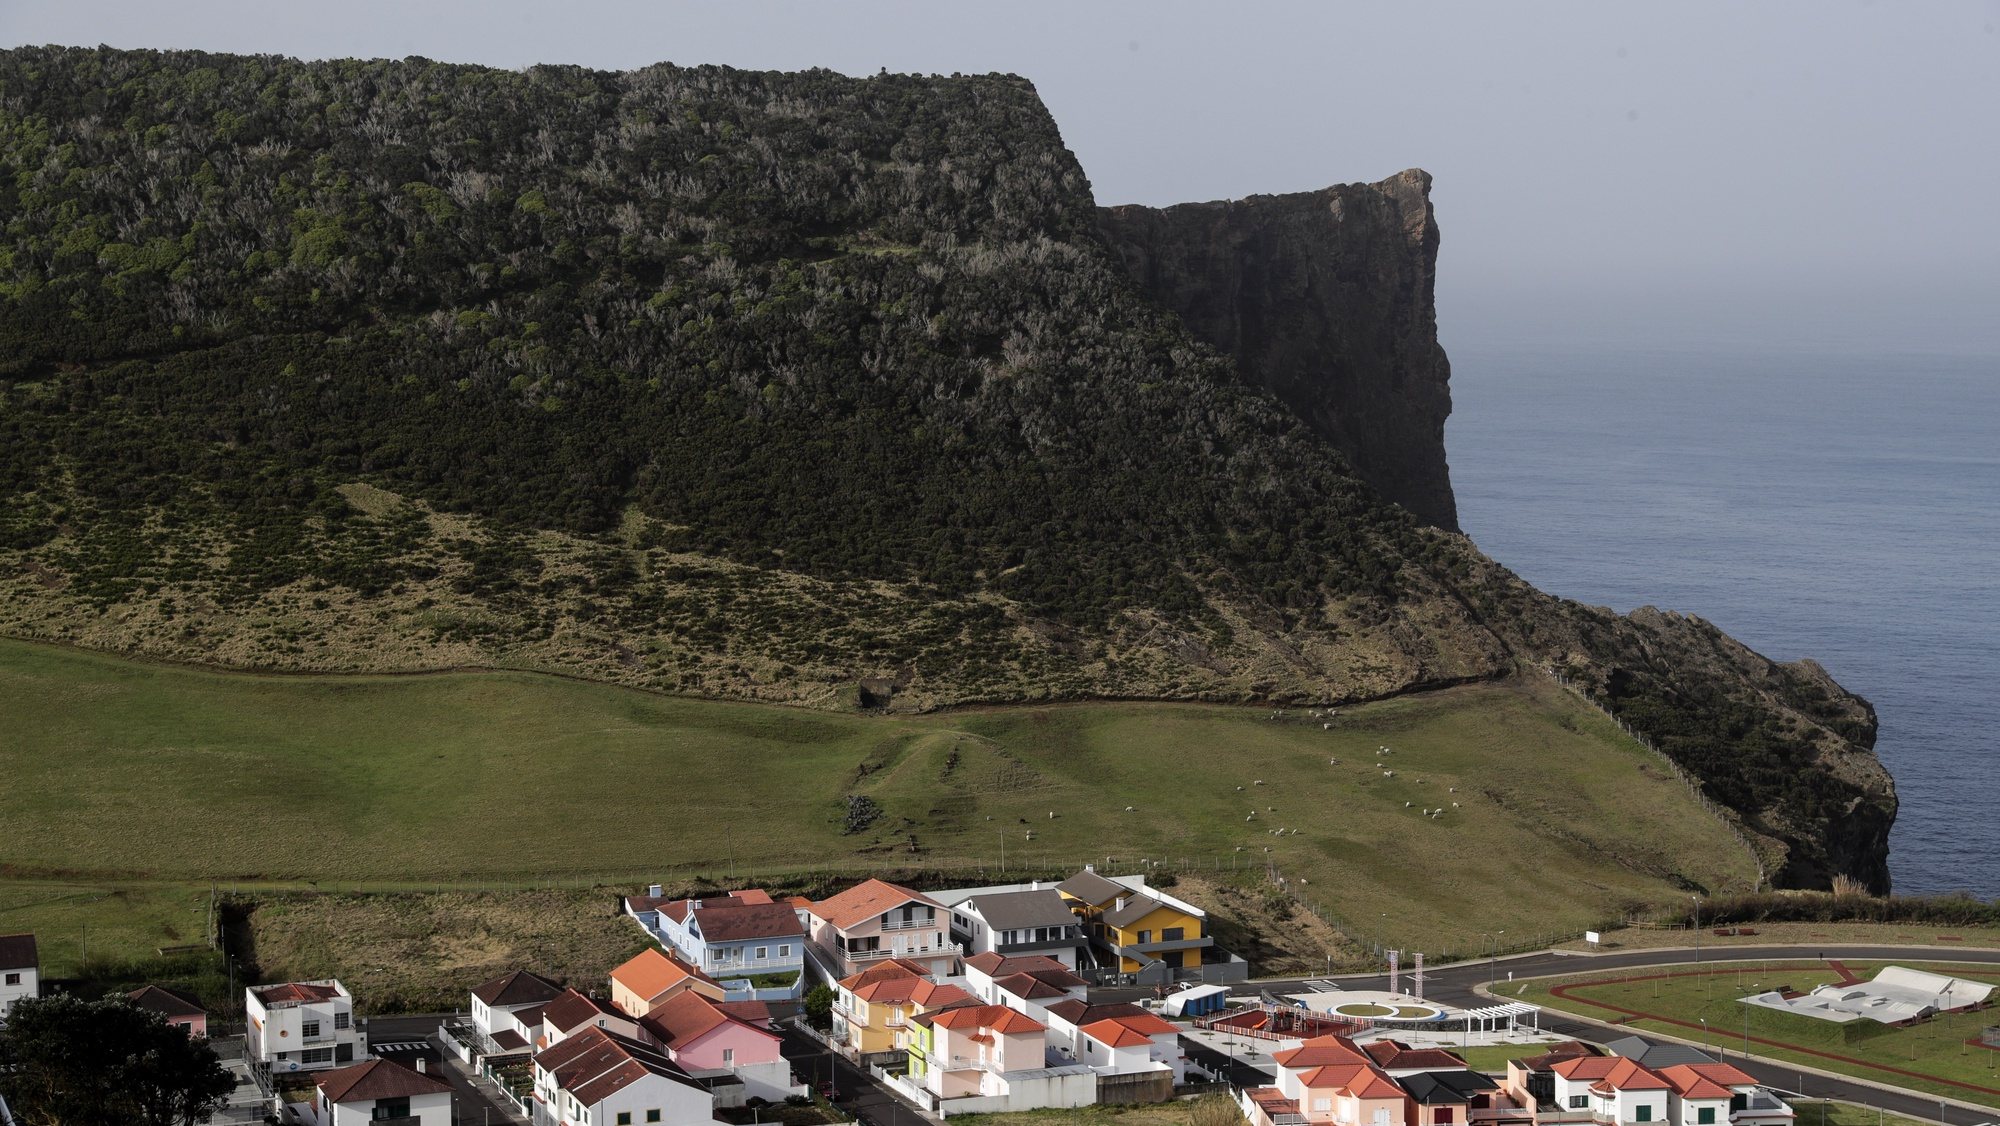 Vista geral de parte da vila de Velas na ilha de São Jorge nos Açores, 29 de março de 2022. TIAGO PETINGA/LUSA